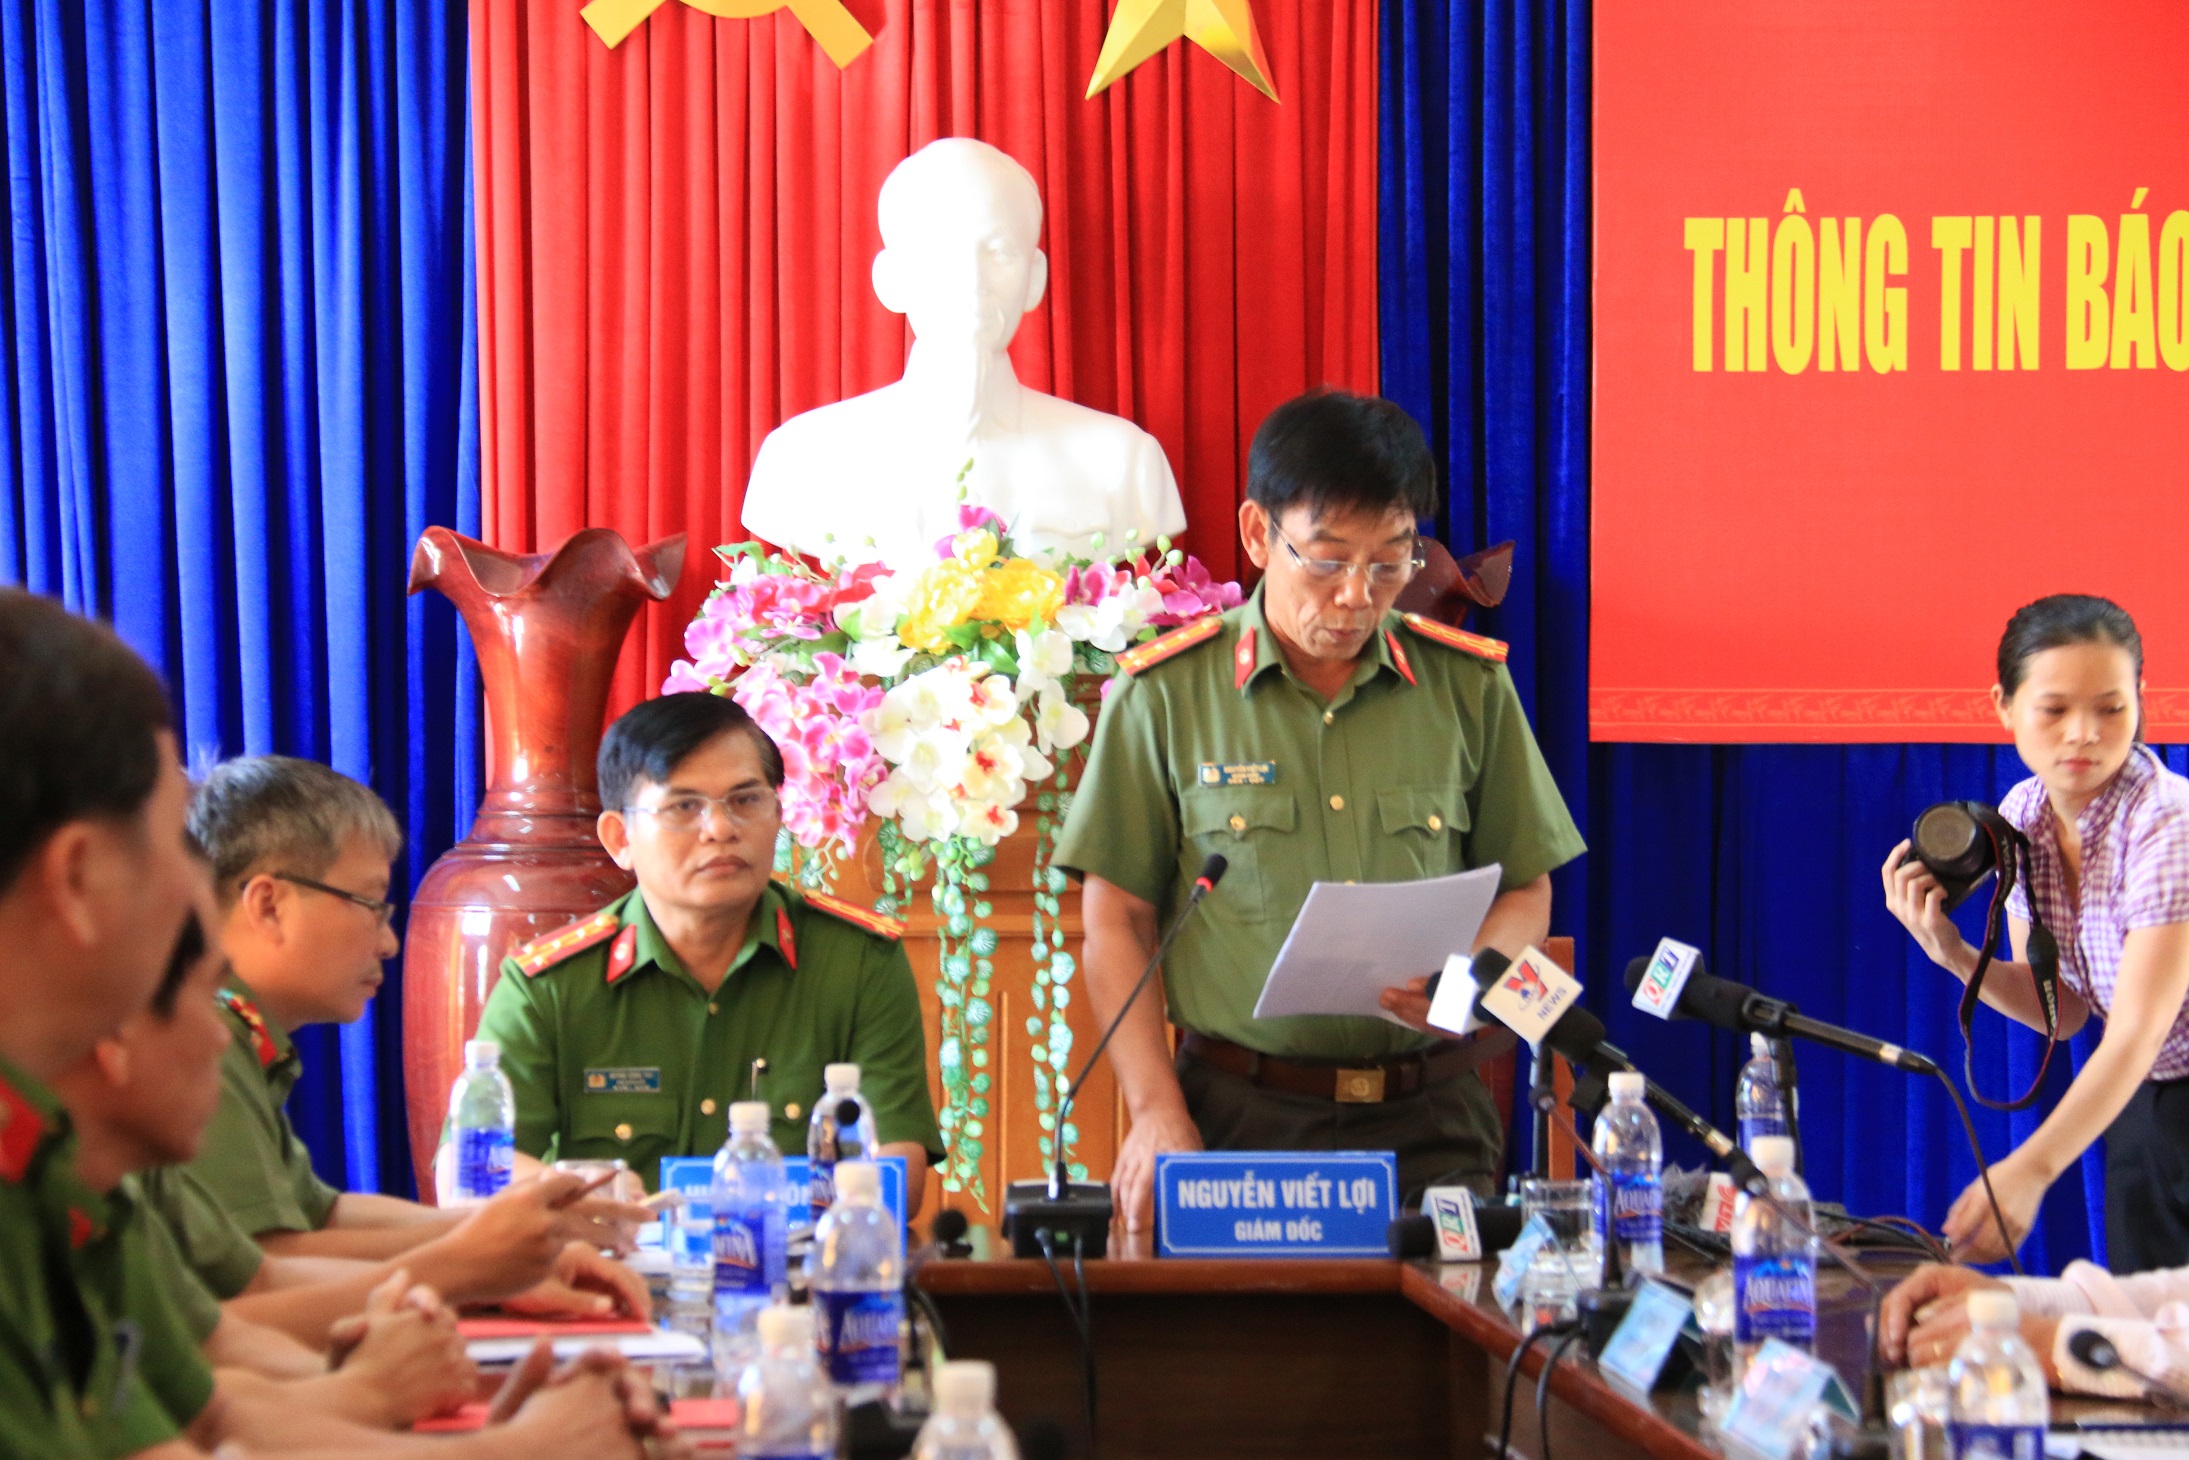 
Công an tỉnh Quảng Nam họp báo công bố thông tin trước đó
